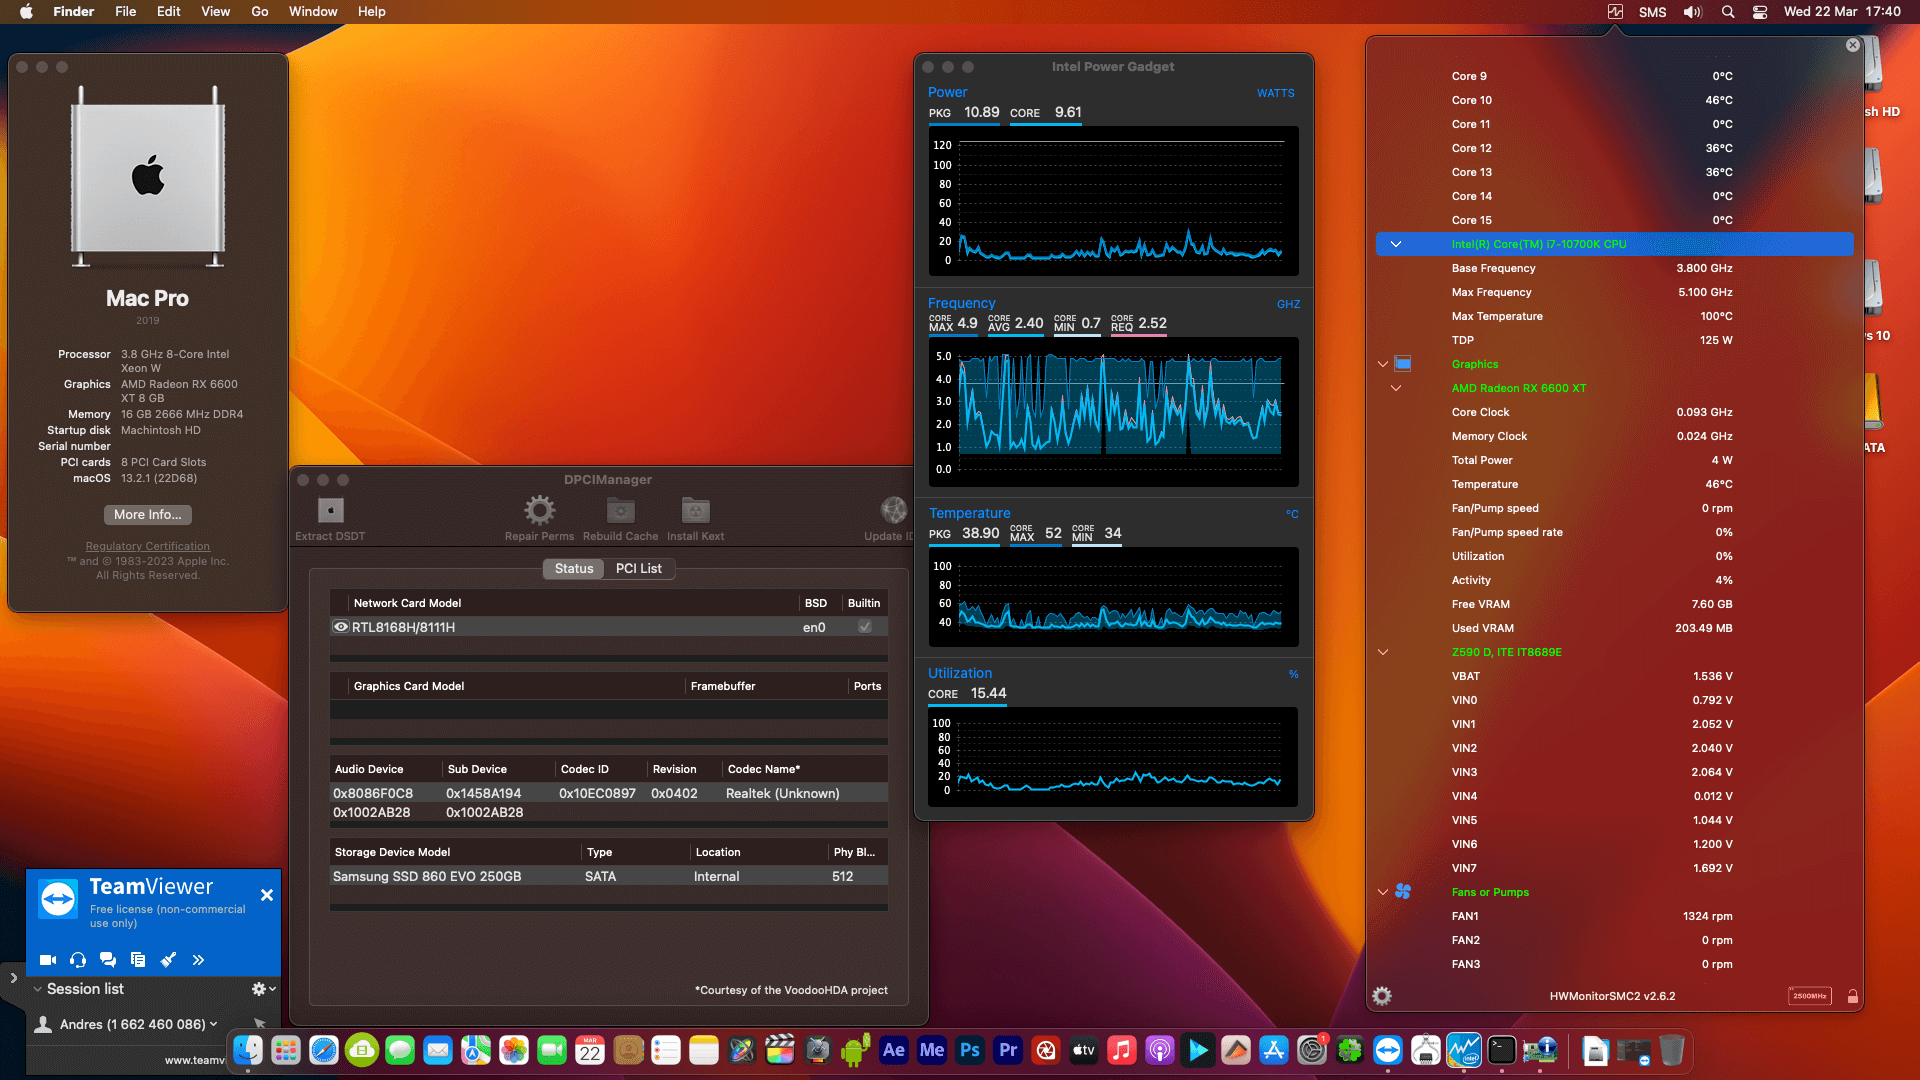 Success Hackintosh macOS Ventura 13.2.1 Build 22D68 in Gigabyte Z590 D + Intel Core i7 10700K + Power Color RX 6600 XT